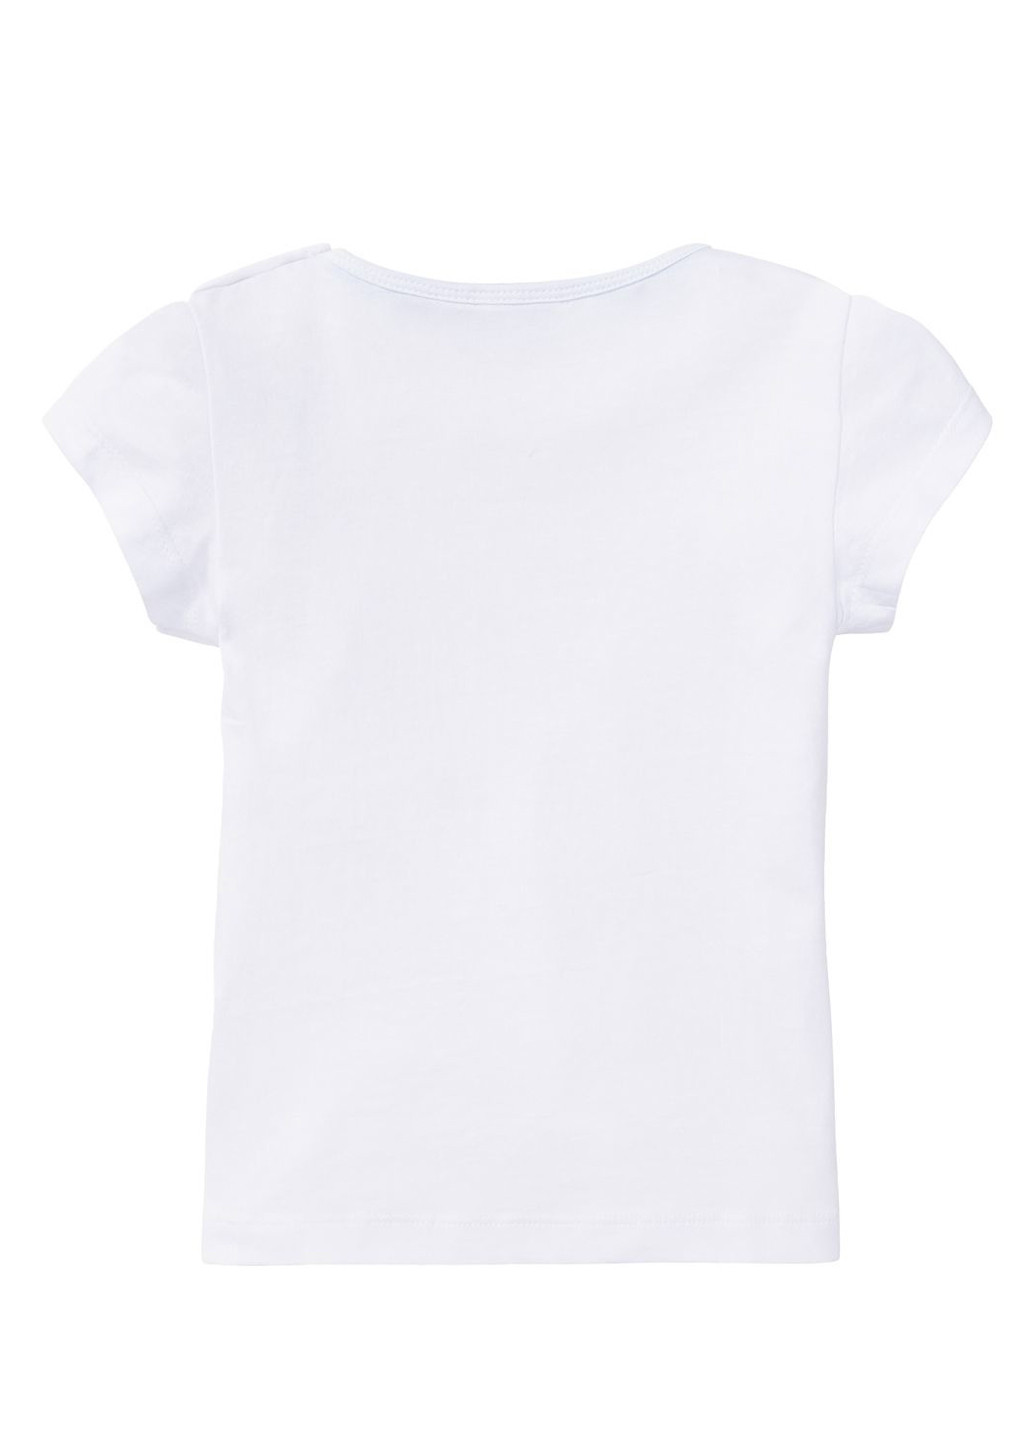 Комбинированная футболки для девочки (4 шт) Lidl